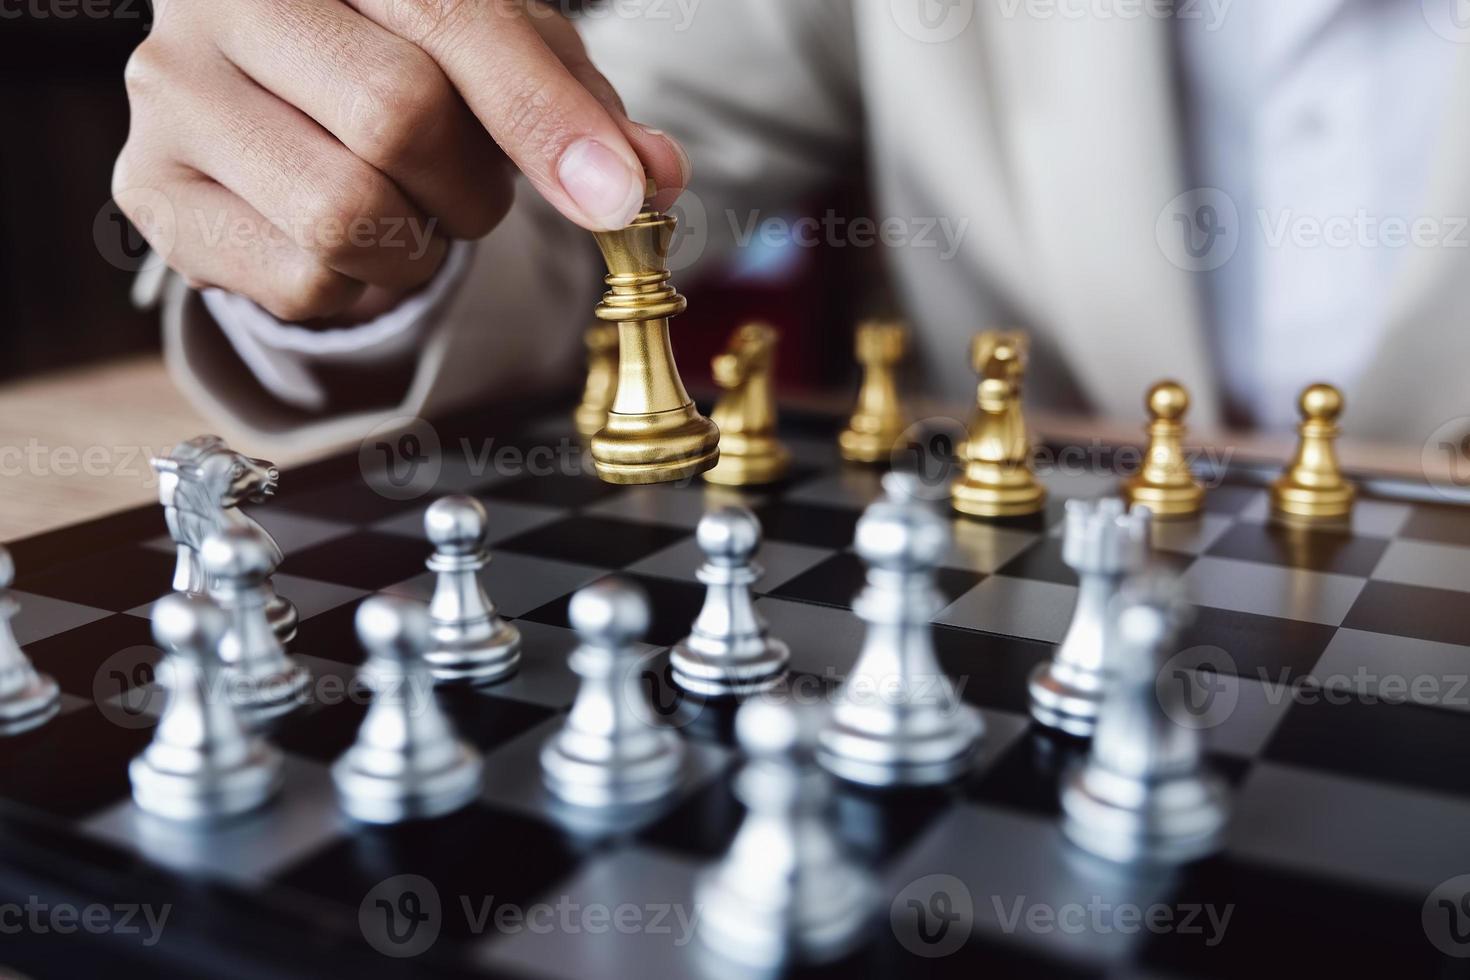 affärs konkurrens koncept med bordsschack spel foto